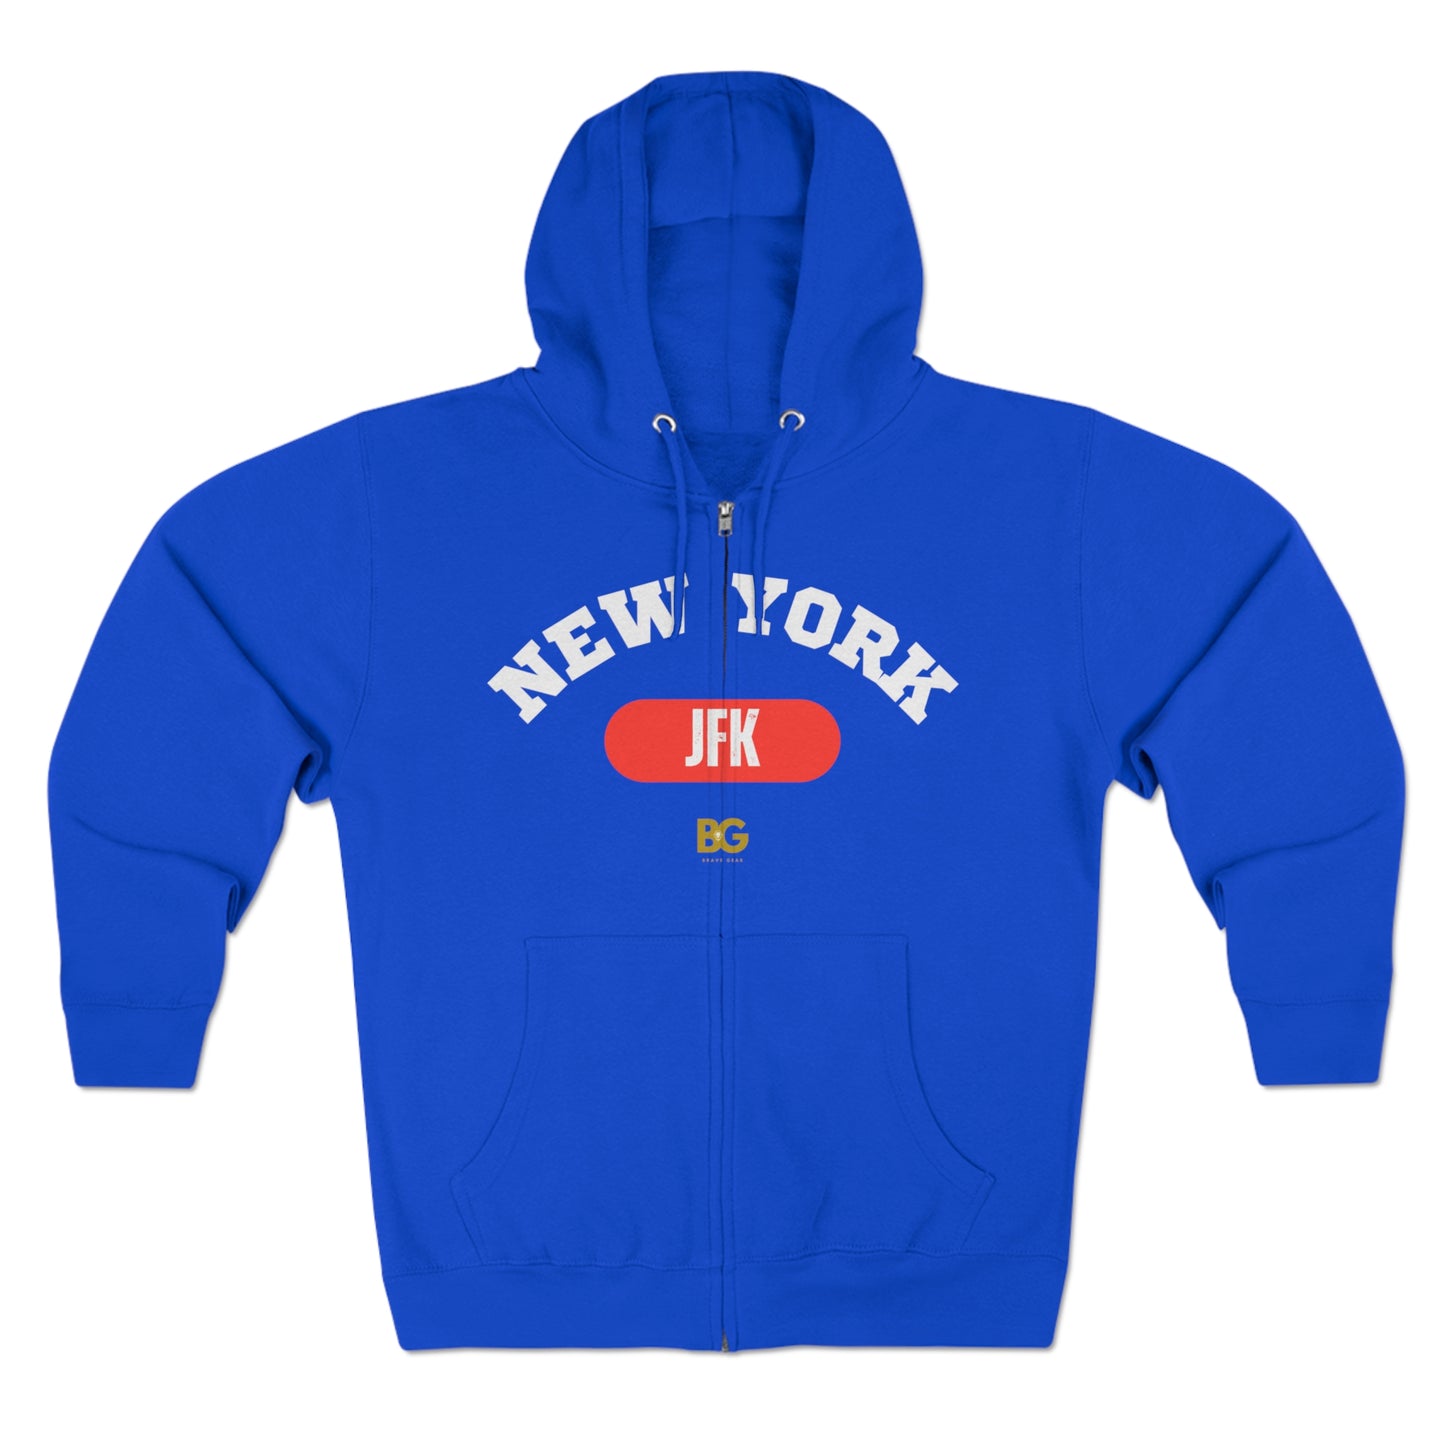 BG "New York JFK" Premium Full Zip Hoodie